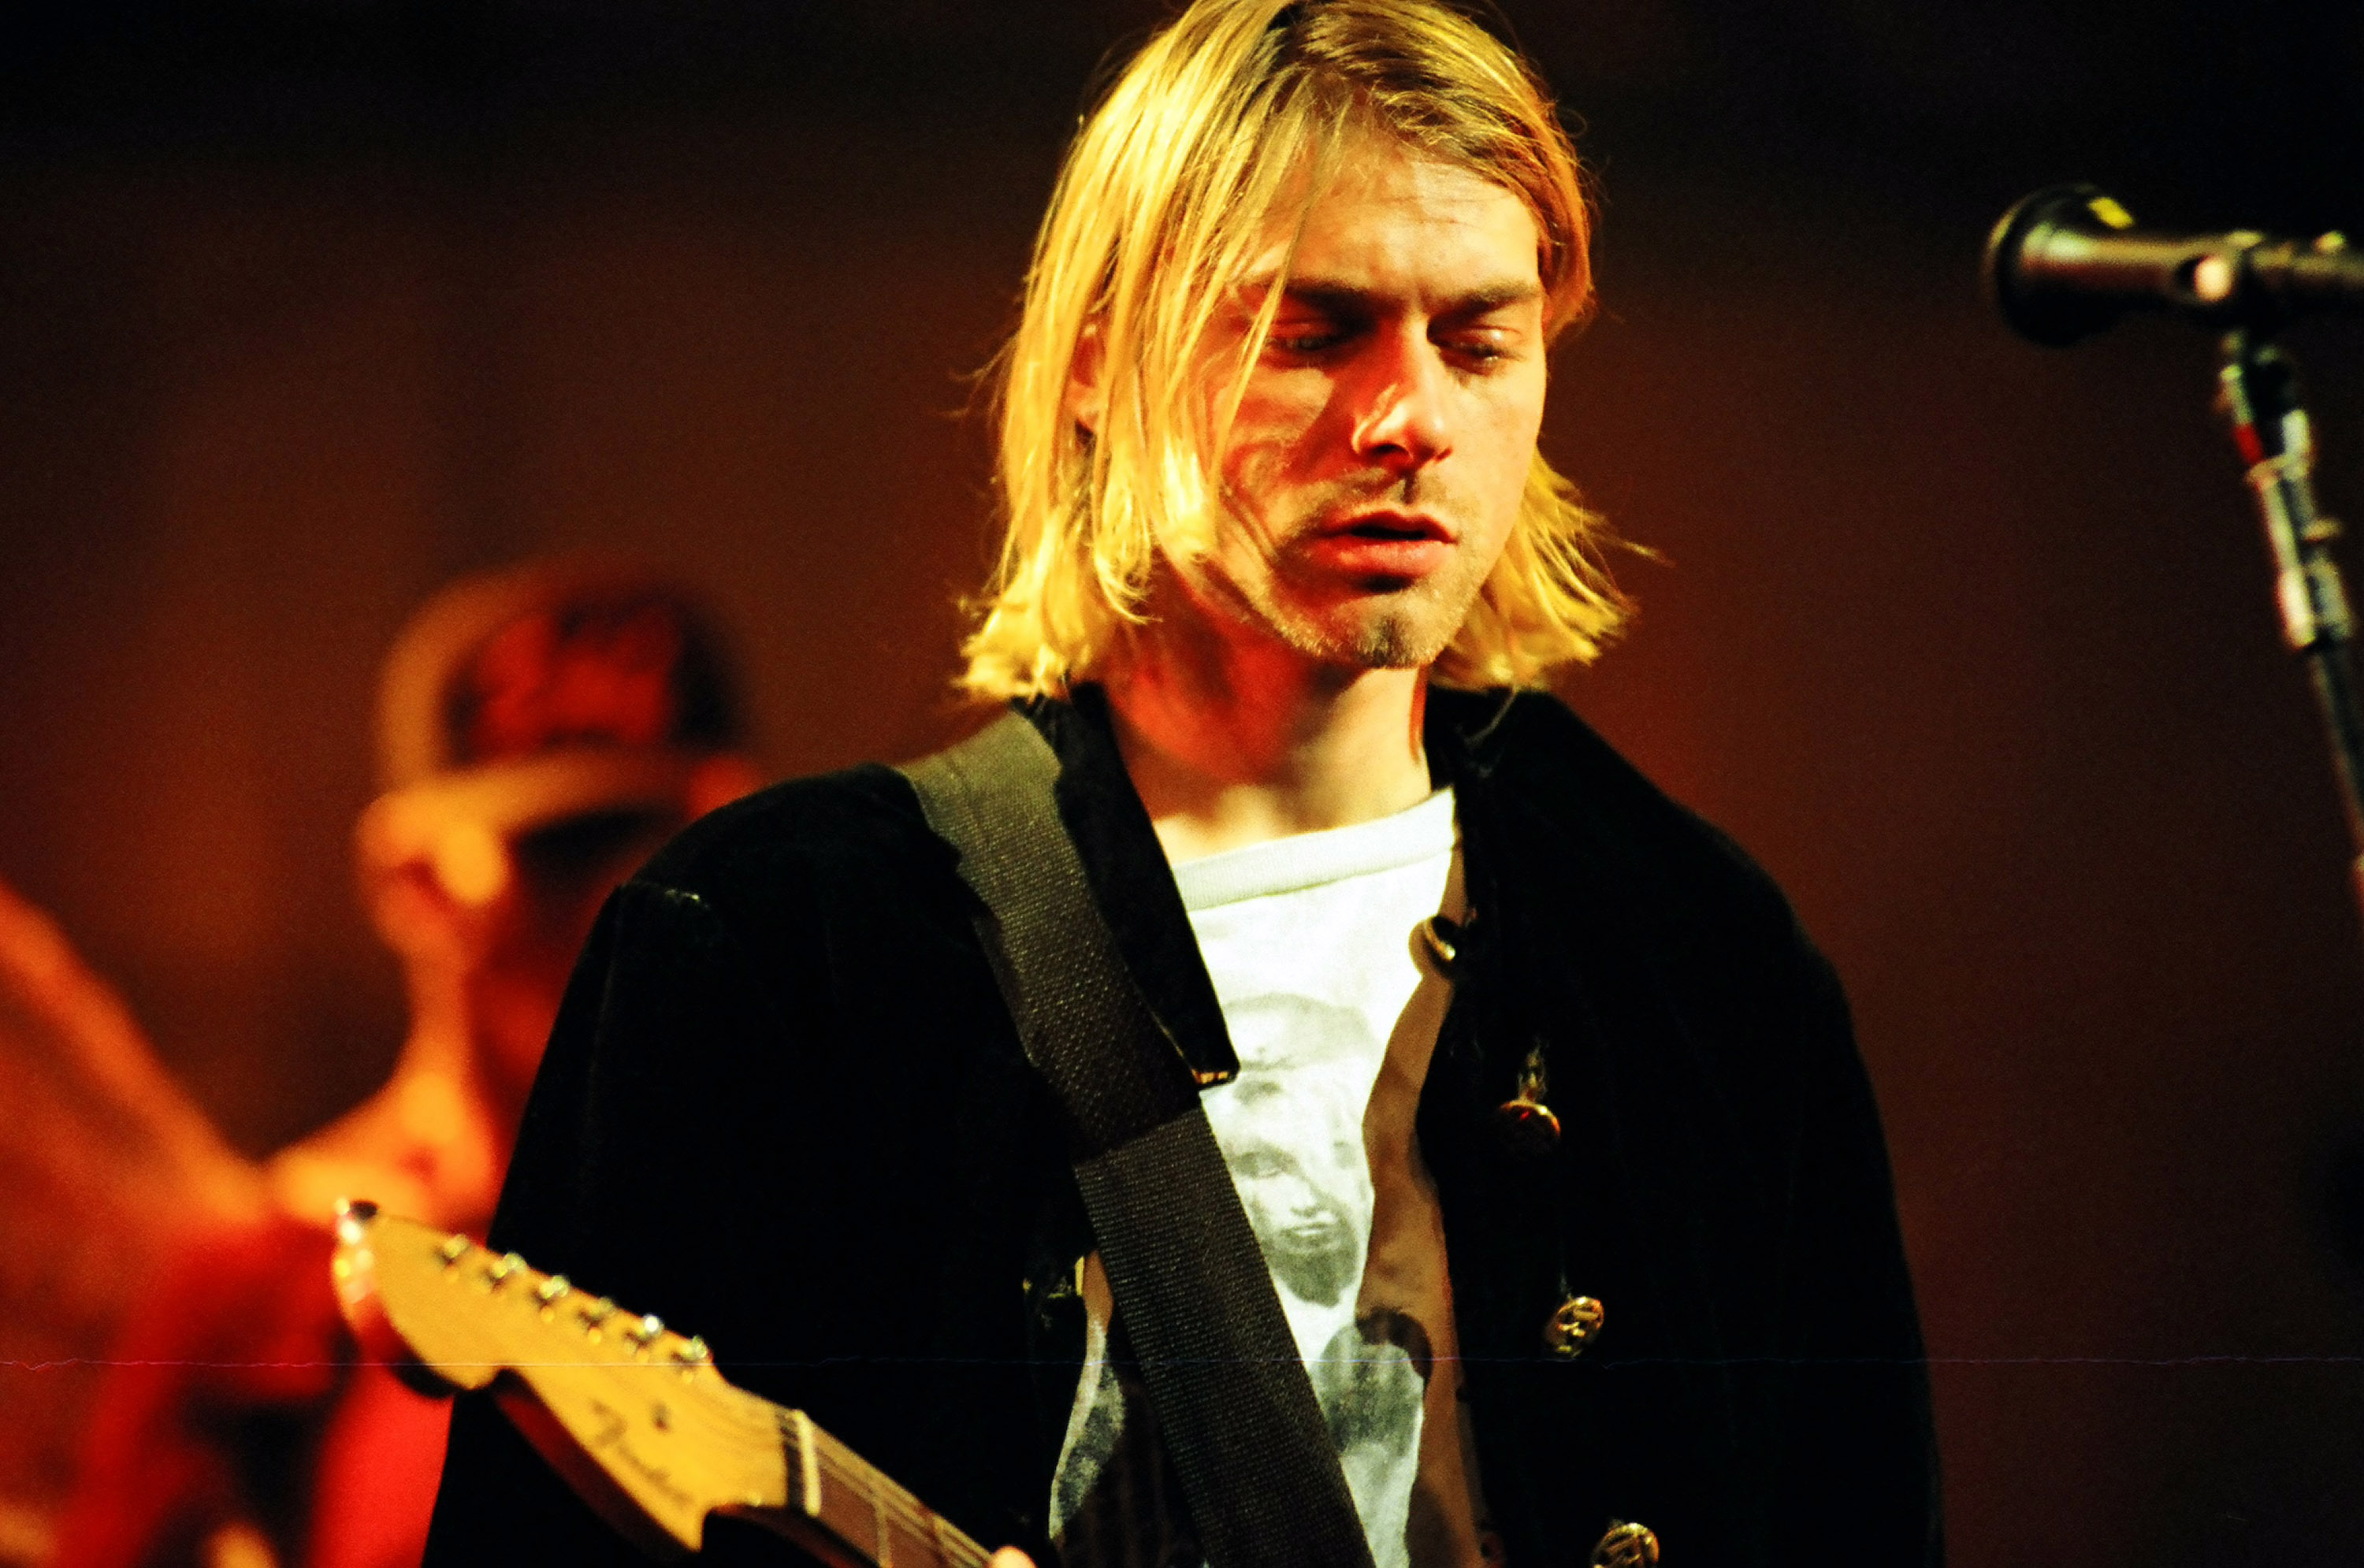 Курт кобейн это. Нирвана Курт Кобейн. Курт Кобейн и Nirvana. Группа Нирвана Курт Кобейн. Курта Кобейна Нирвана.